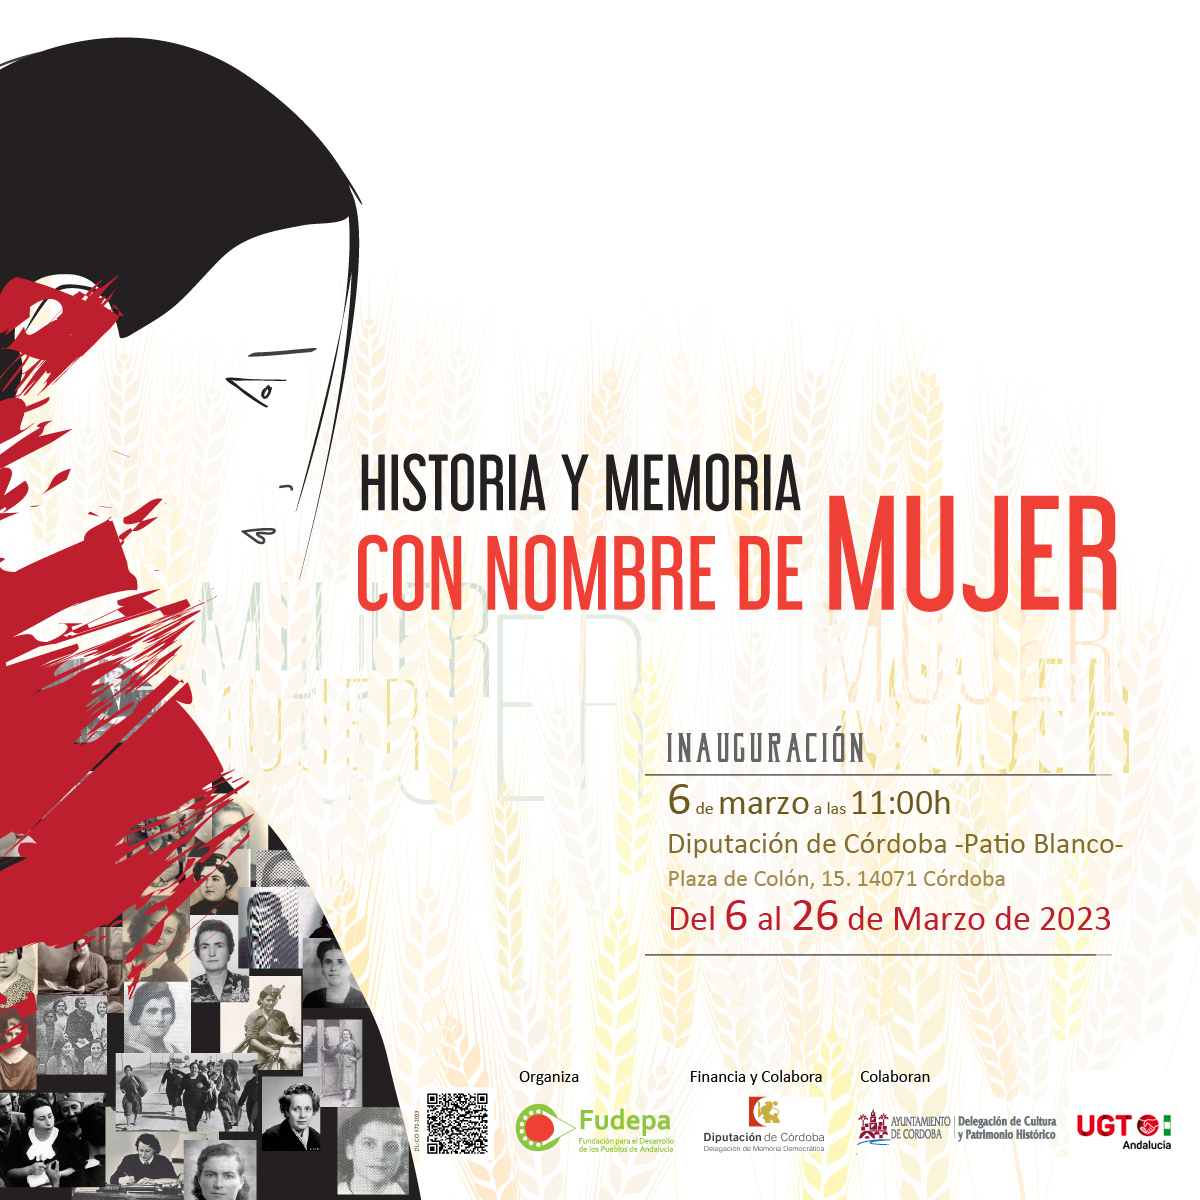 Inauguración de la exposición: "HISTORIA Y MEMORIA CON NOMBRE DE MUJER"